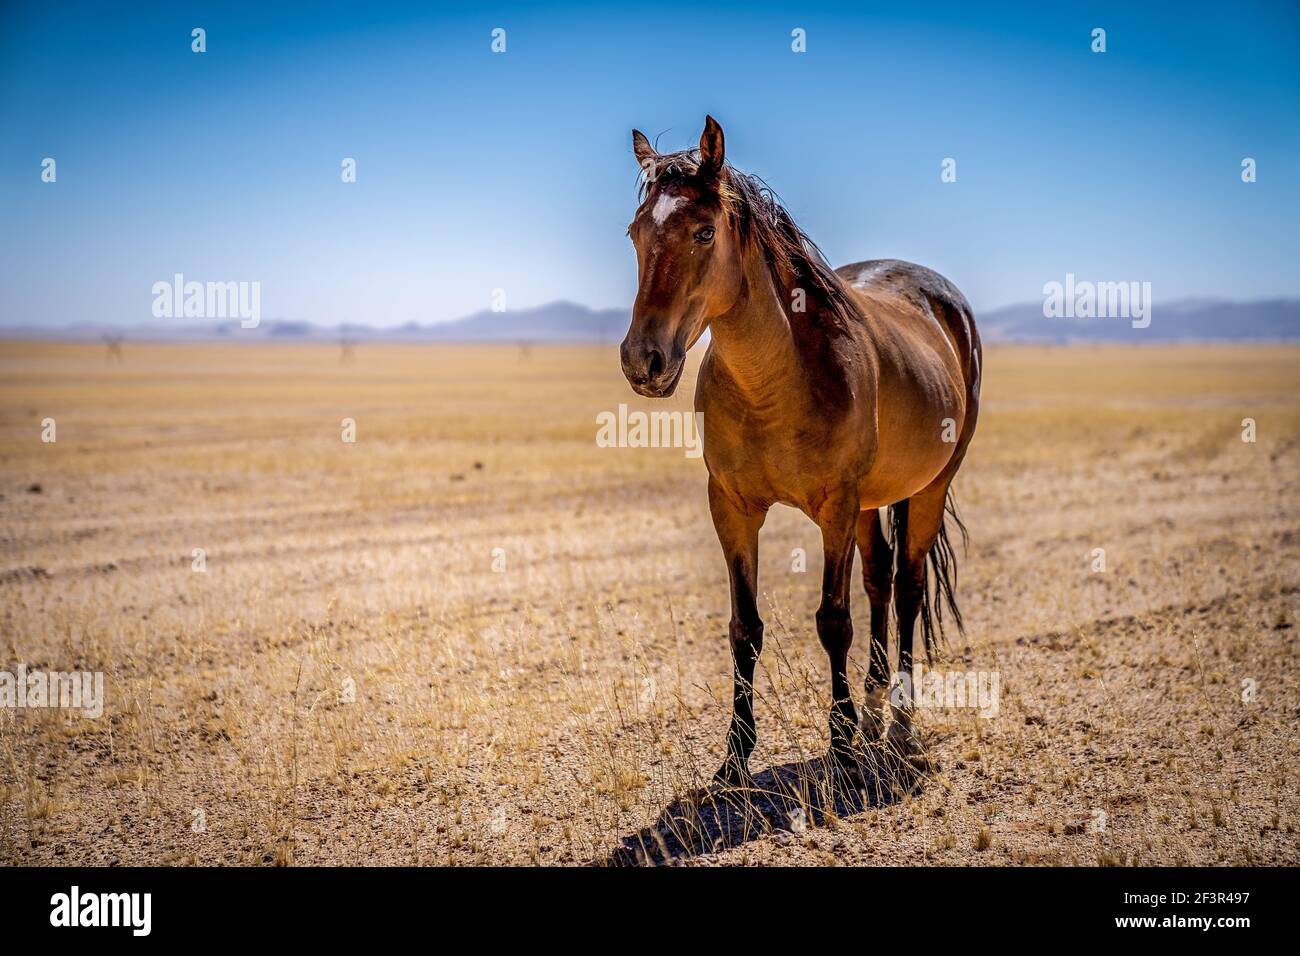 A Wild horse of Garub, near the namib desert in namibia Stock Photo